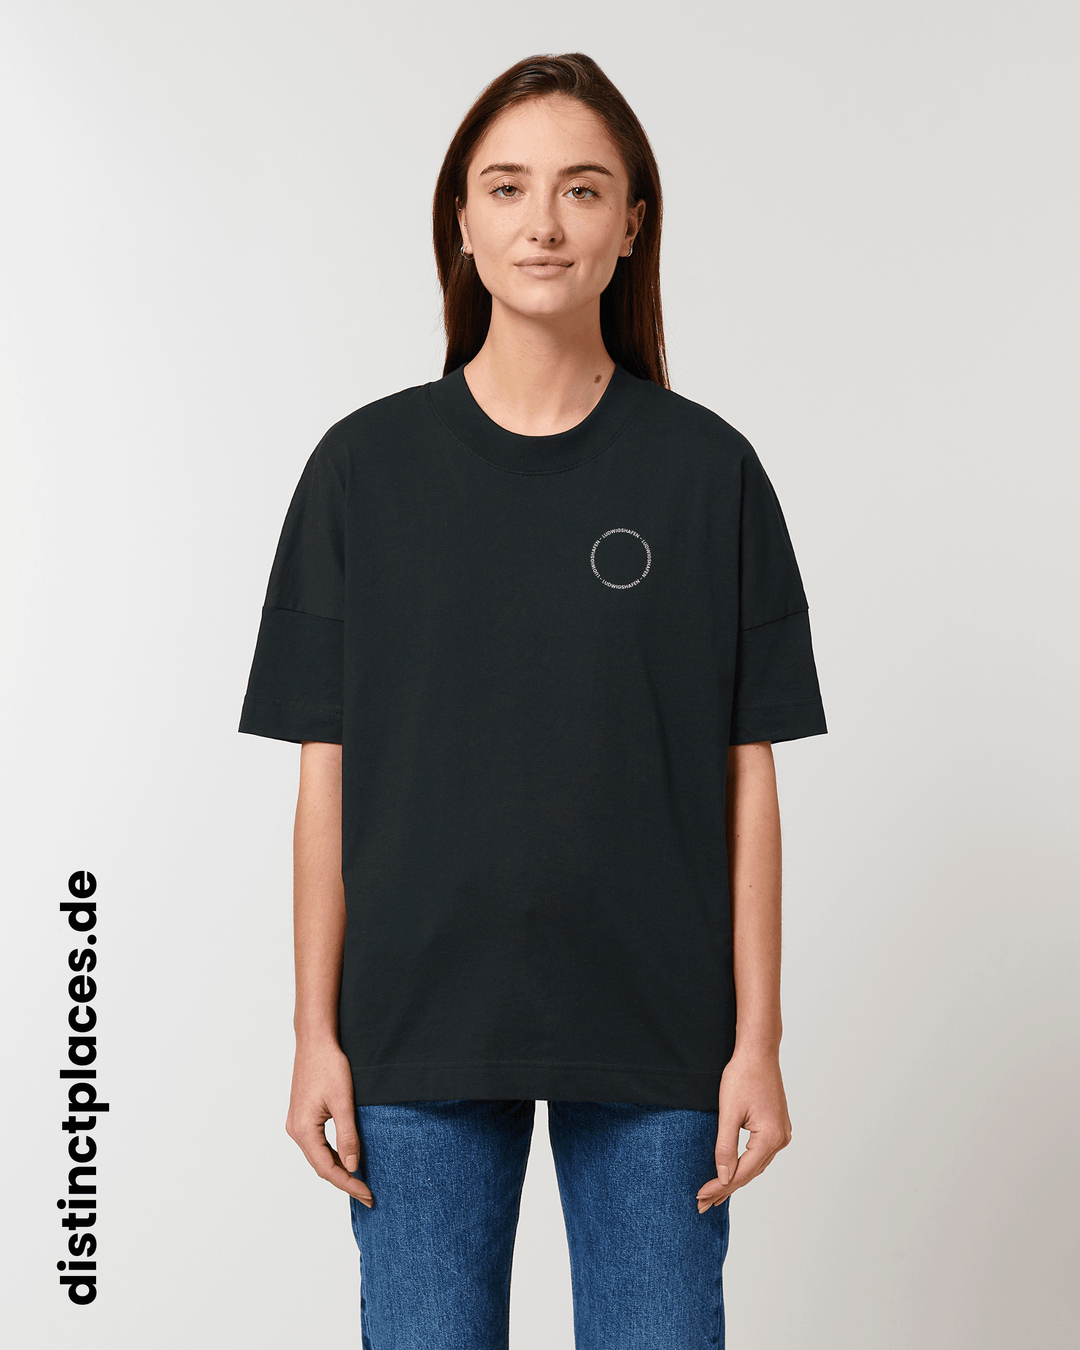 Frau von vorne trägt schwarzes fairtrade, vegan und bio-baumwoll T-Shirt mit einem minimalistischem weißen Logo, beziehungsweise Schriftzug für Ludwigshafen